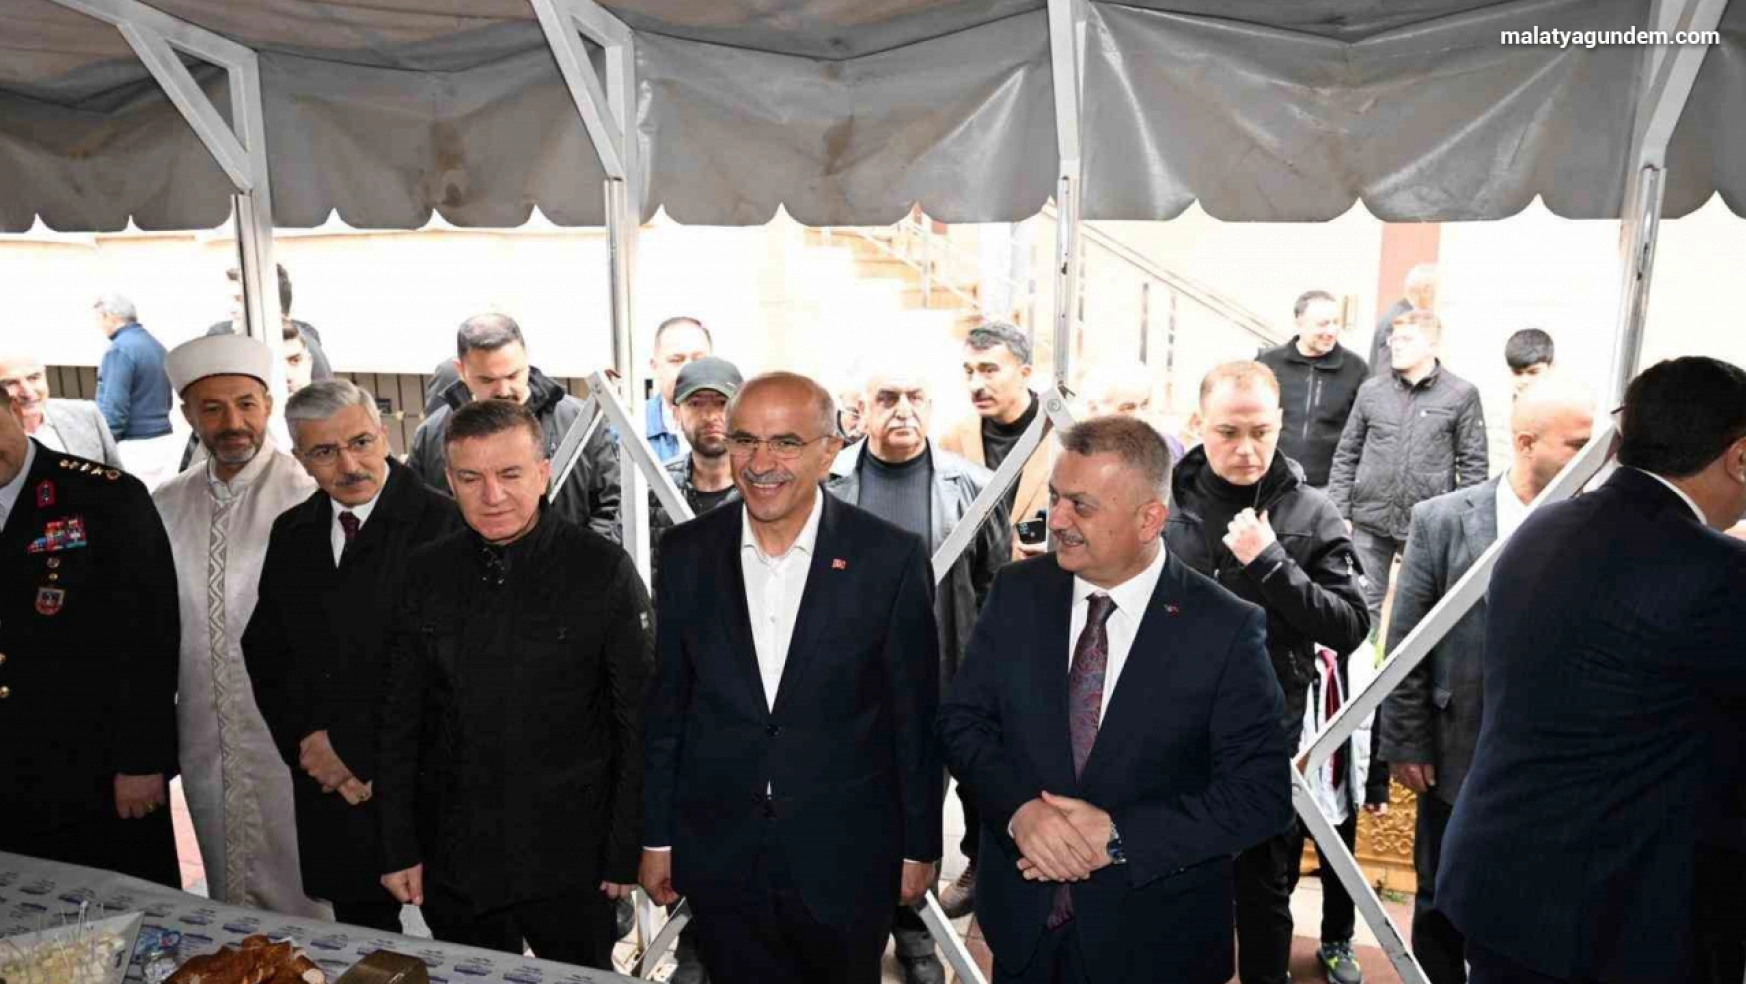 Malatya'da resmi bayramlaşma Kernek Karagözlüler Camisi'nde yapıldı